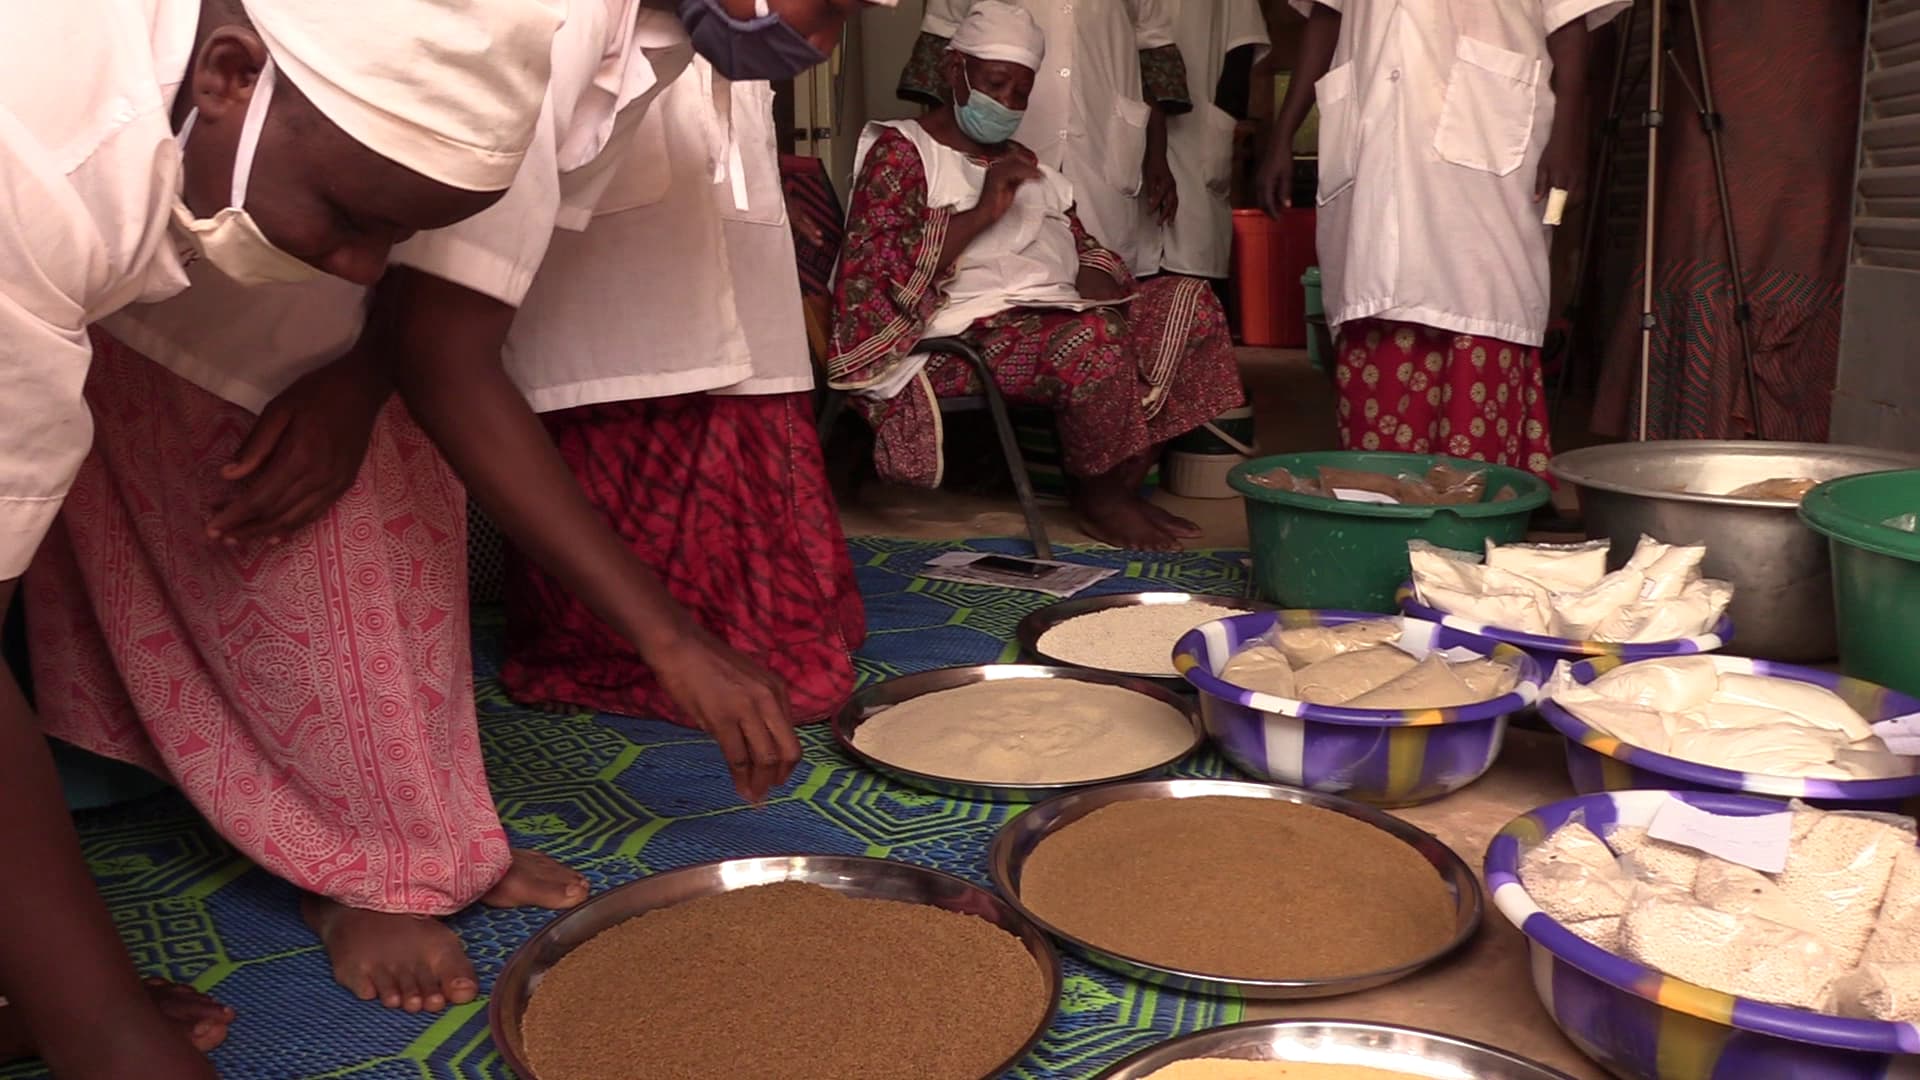 Formation en agro-alimentaire des femmes du groupement Zumunci du quartier Boukoki 2 (Niamey)